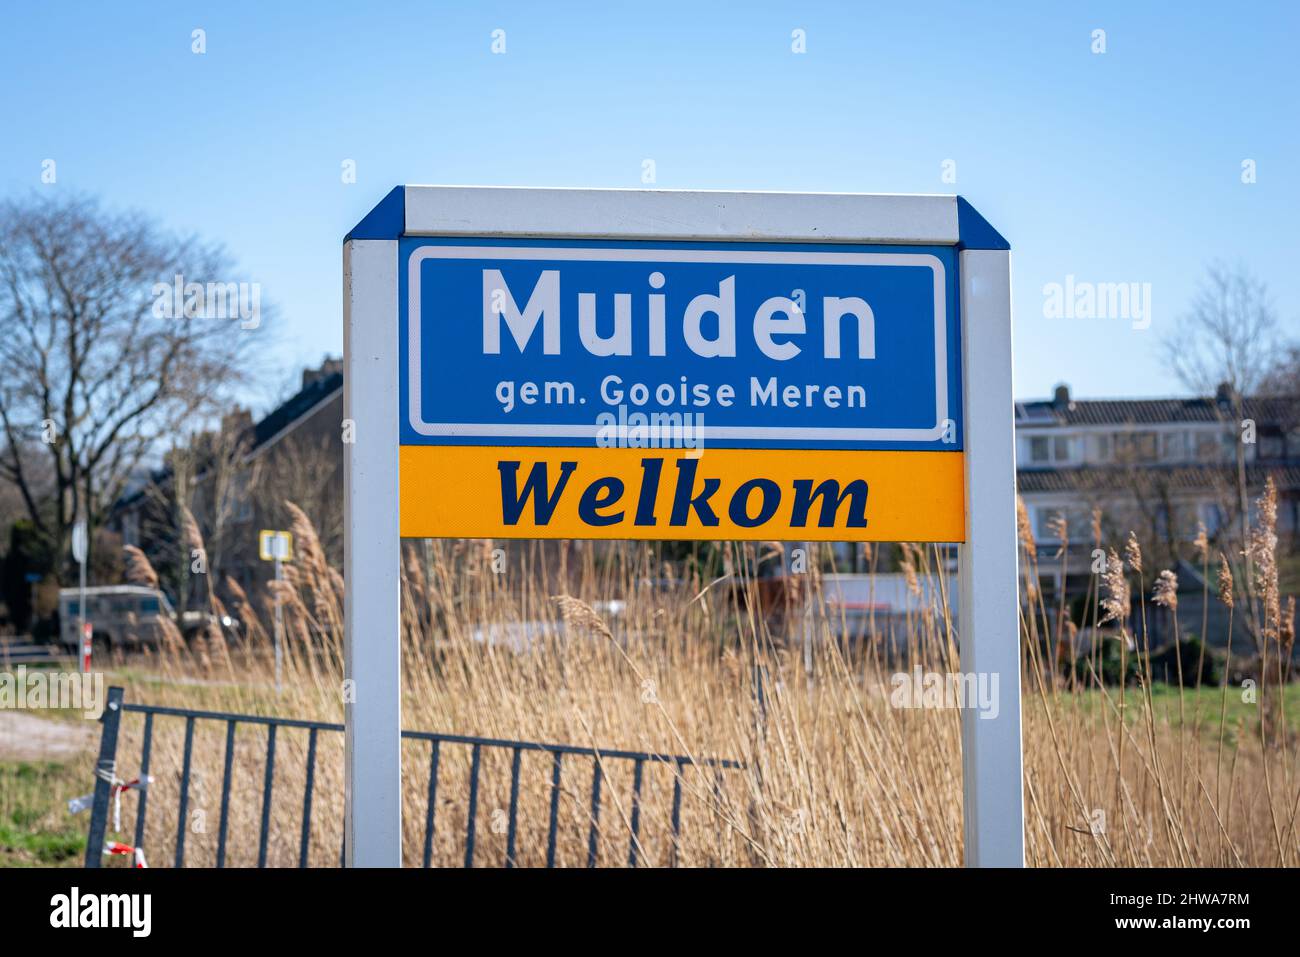 Nom du lieu signe de Muiden, municipalité de Gooise Meren, pays-Bas. Signe ci-dessous dit Bienvenue (néerlandais: Welkom). Banque D'Images